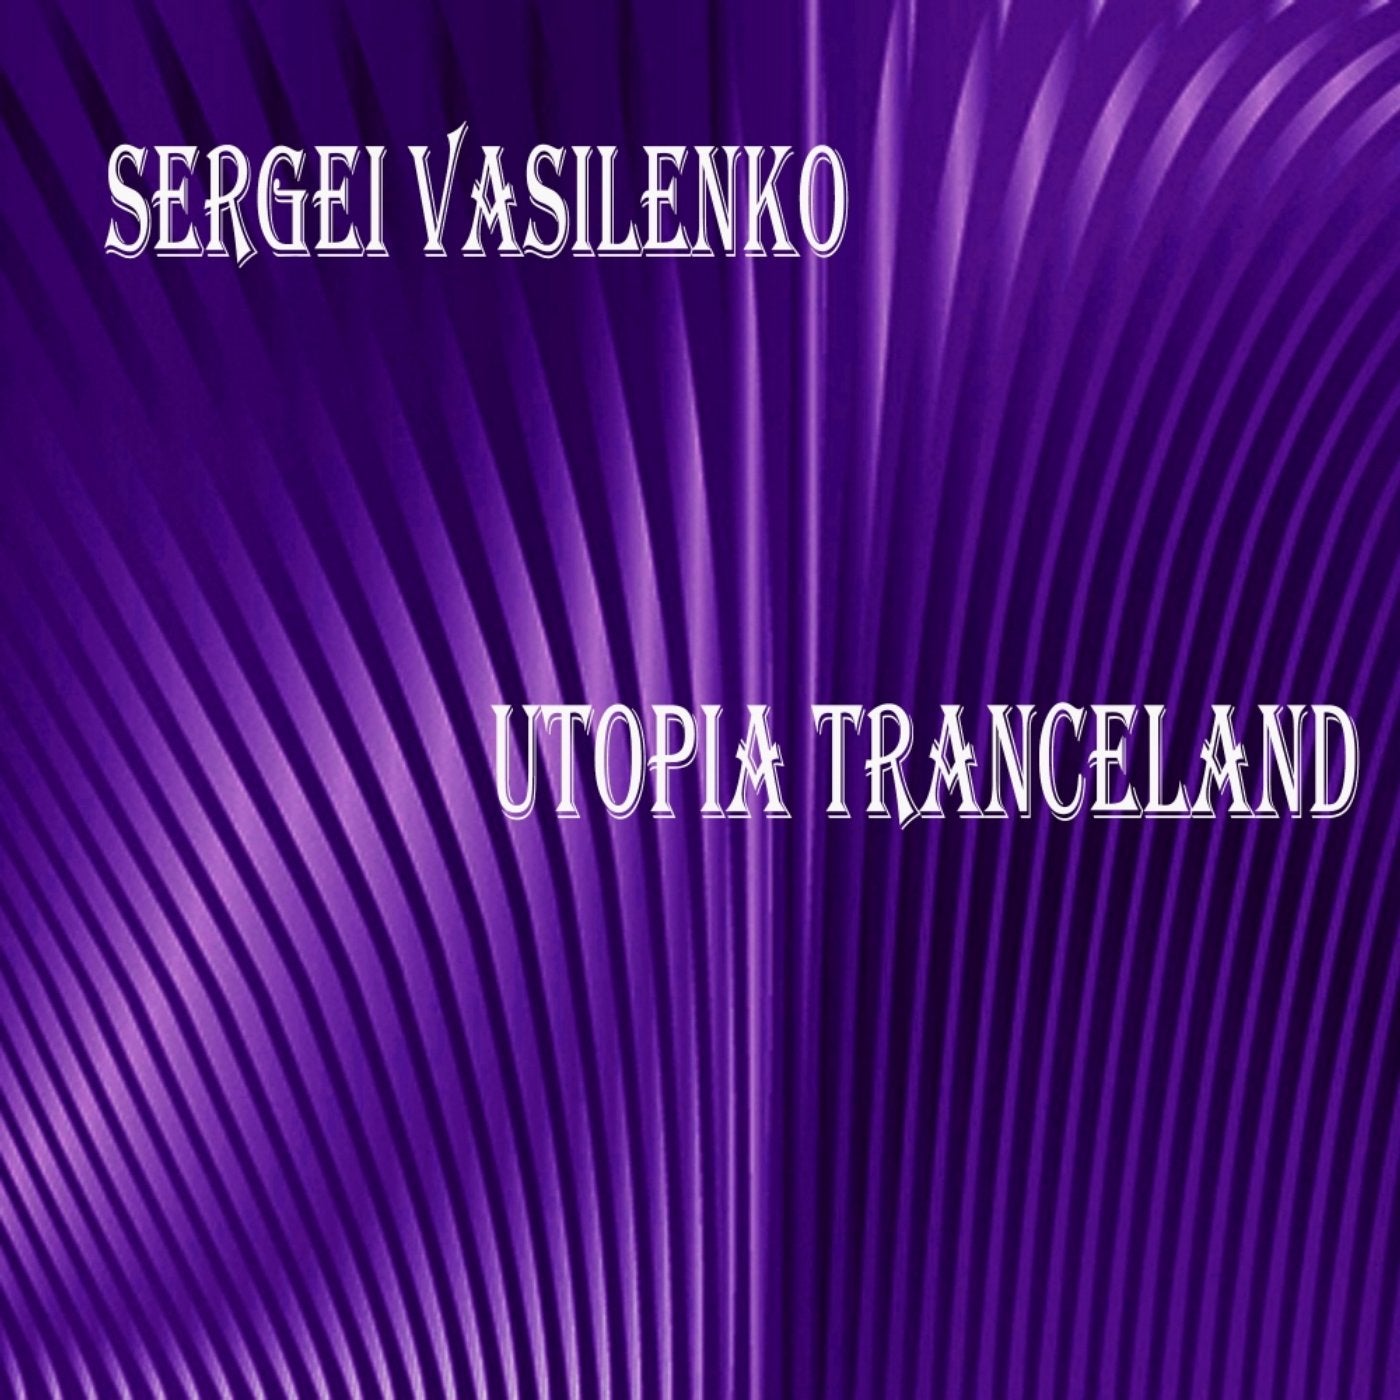 Utopia Tranceland